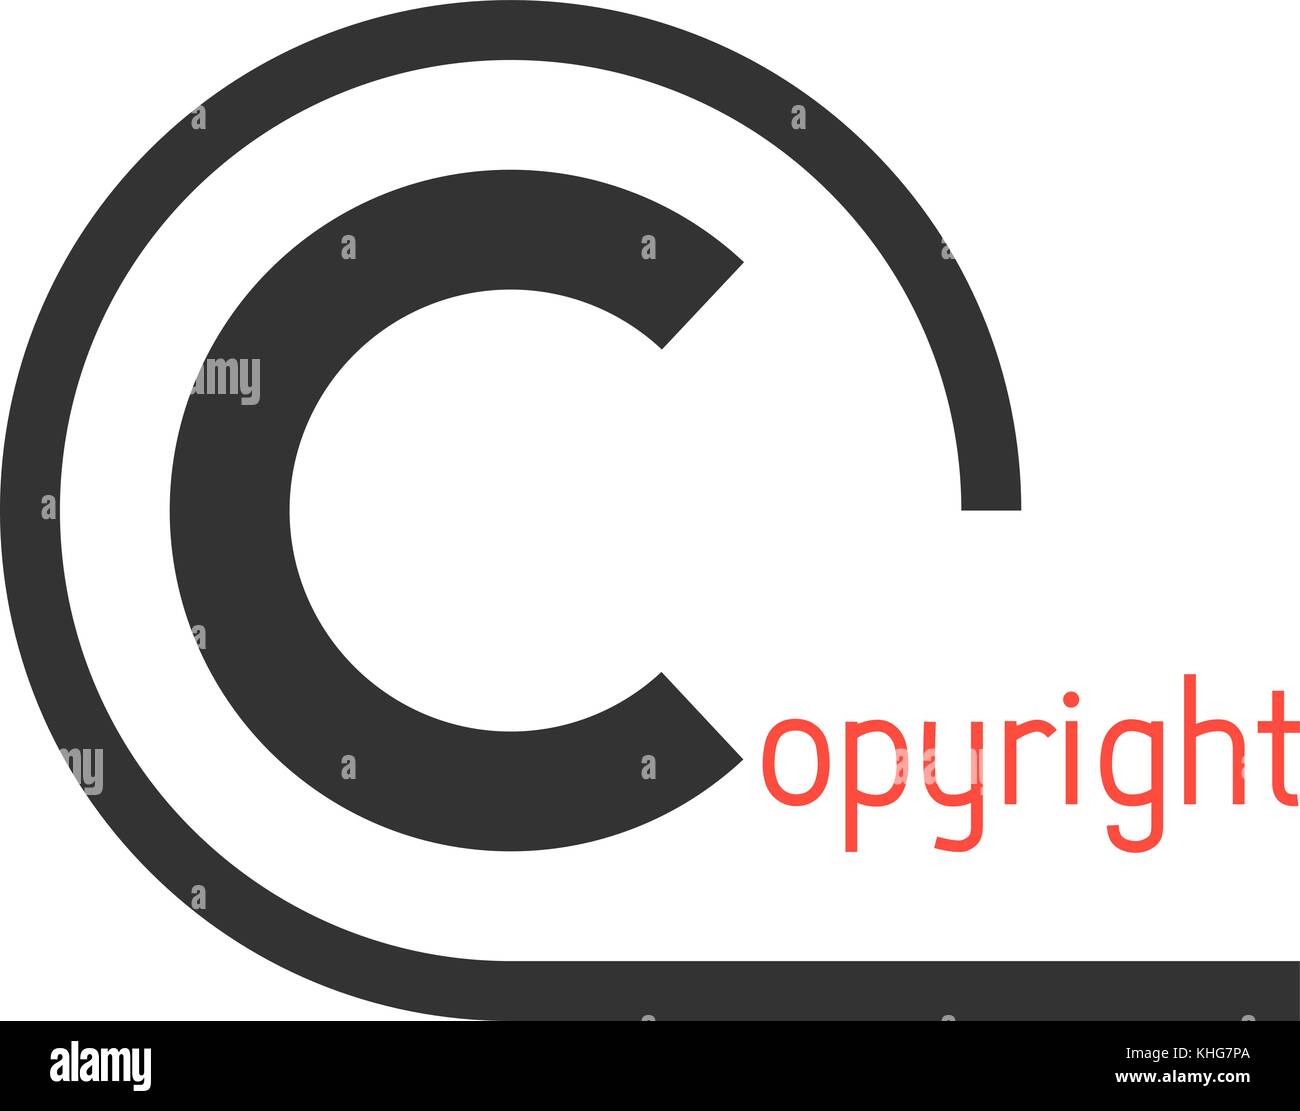 Negro simple símbolo de copyright Ilustración del Vector